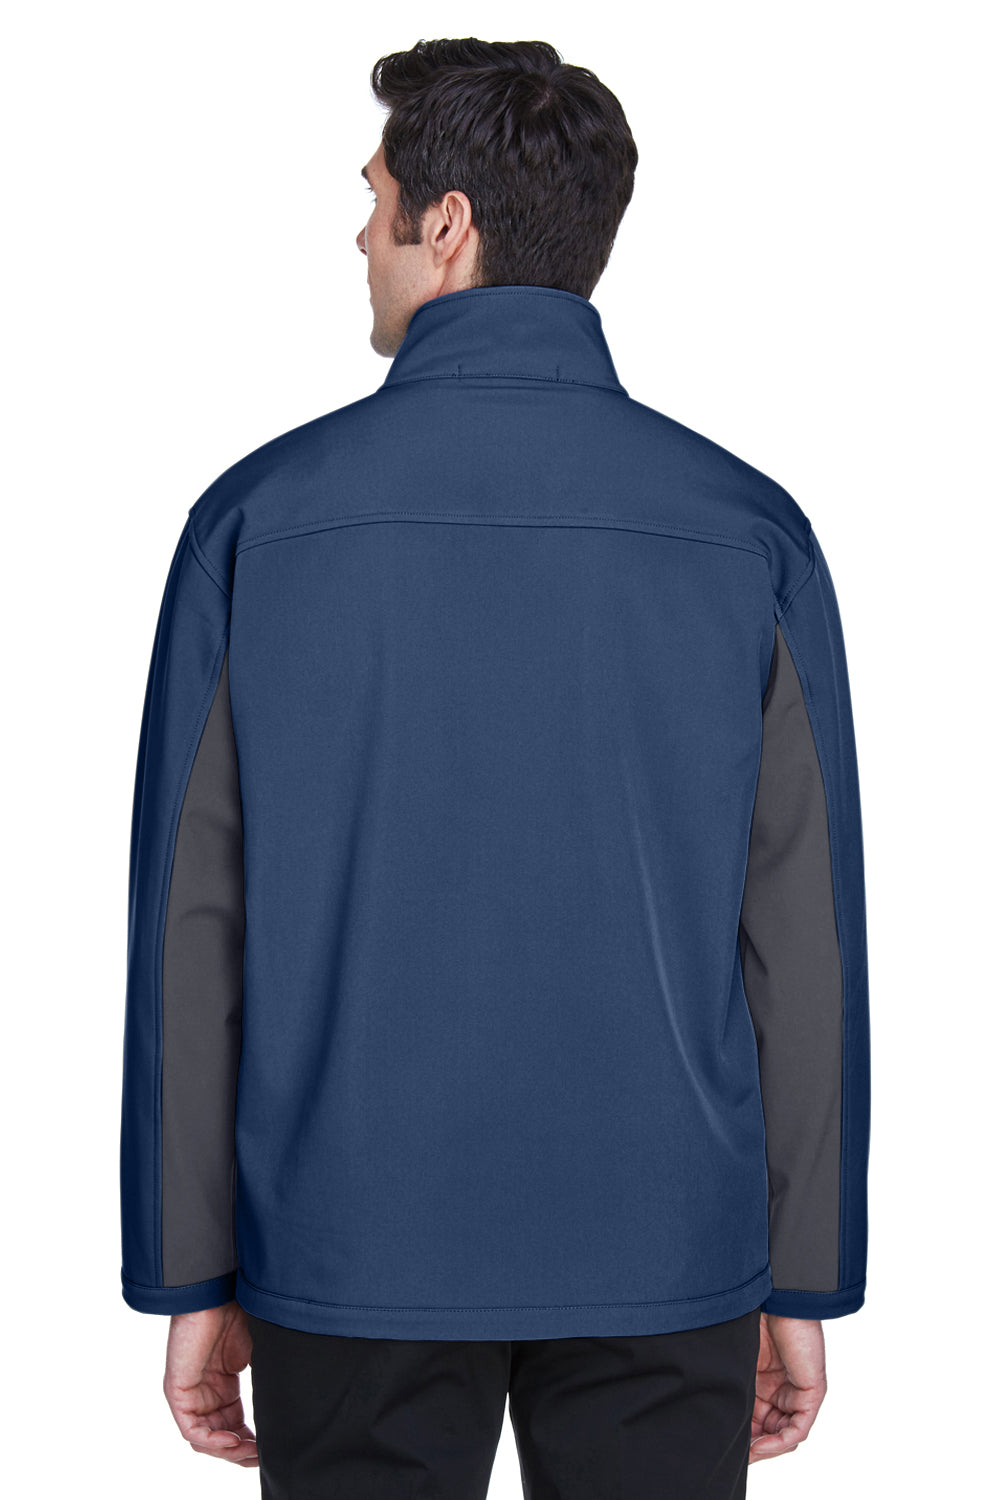 Devon & Jones D997 Mens Wind & Water Resistant Full Zip Jacket Navy Blue/Dark Grey Back